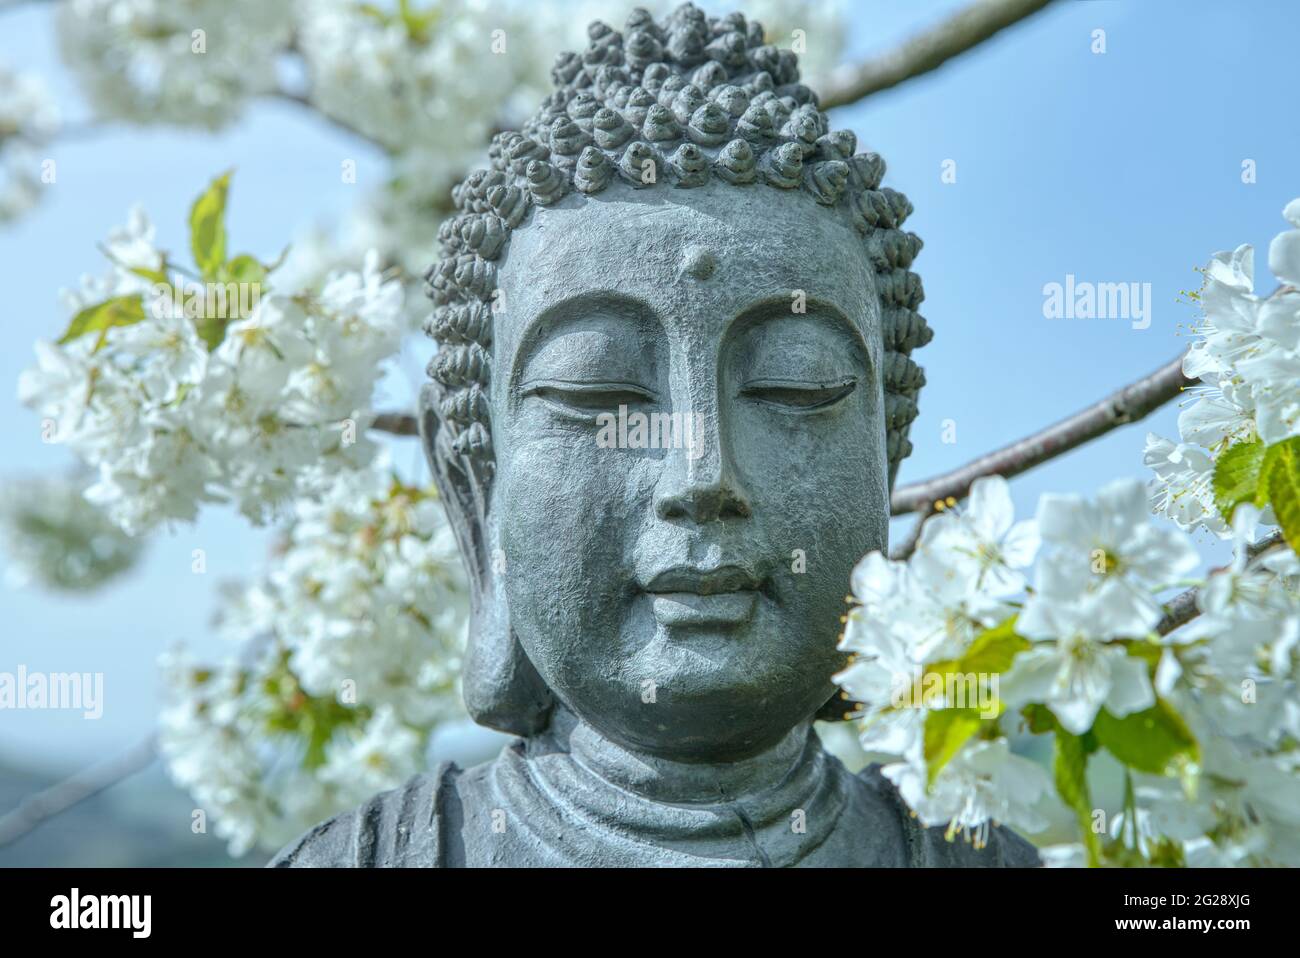 La cara de Buda. Estatua de Buda bajo el árbol de cerezo en flor. Flor de  cerezo blanco perfumado alrededor de la estatua de Buda en primavera  Fotografía de stock - Alamy